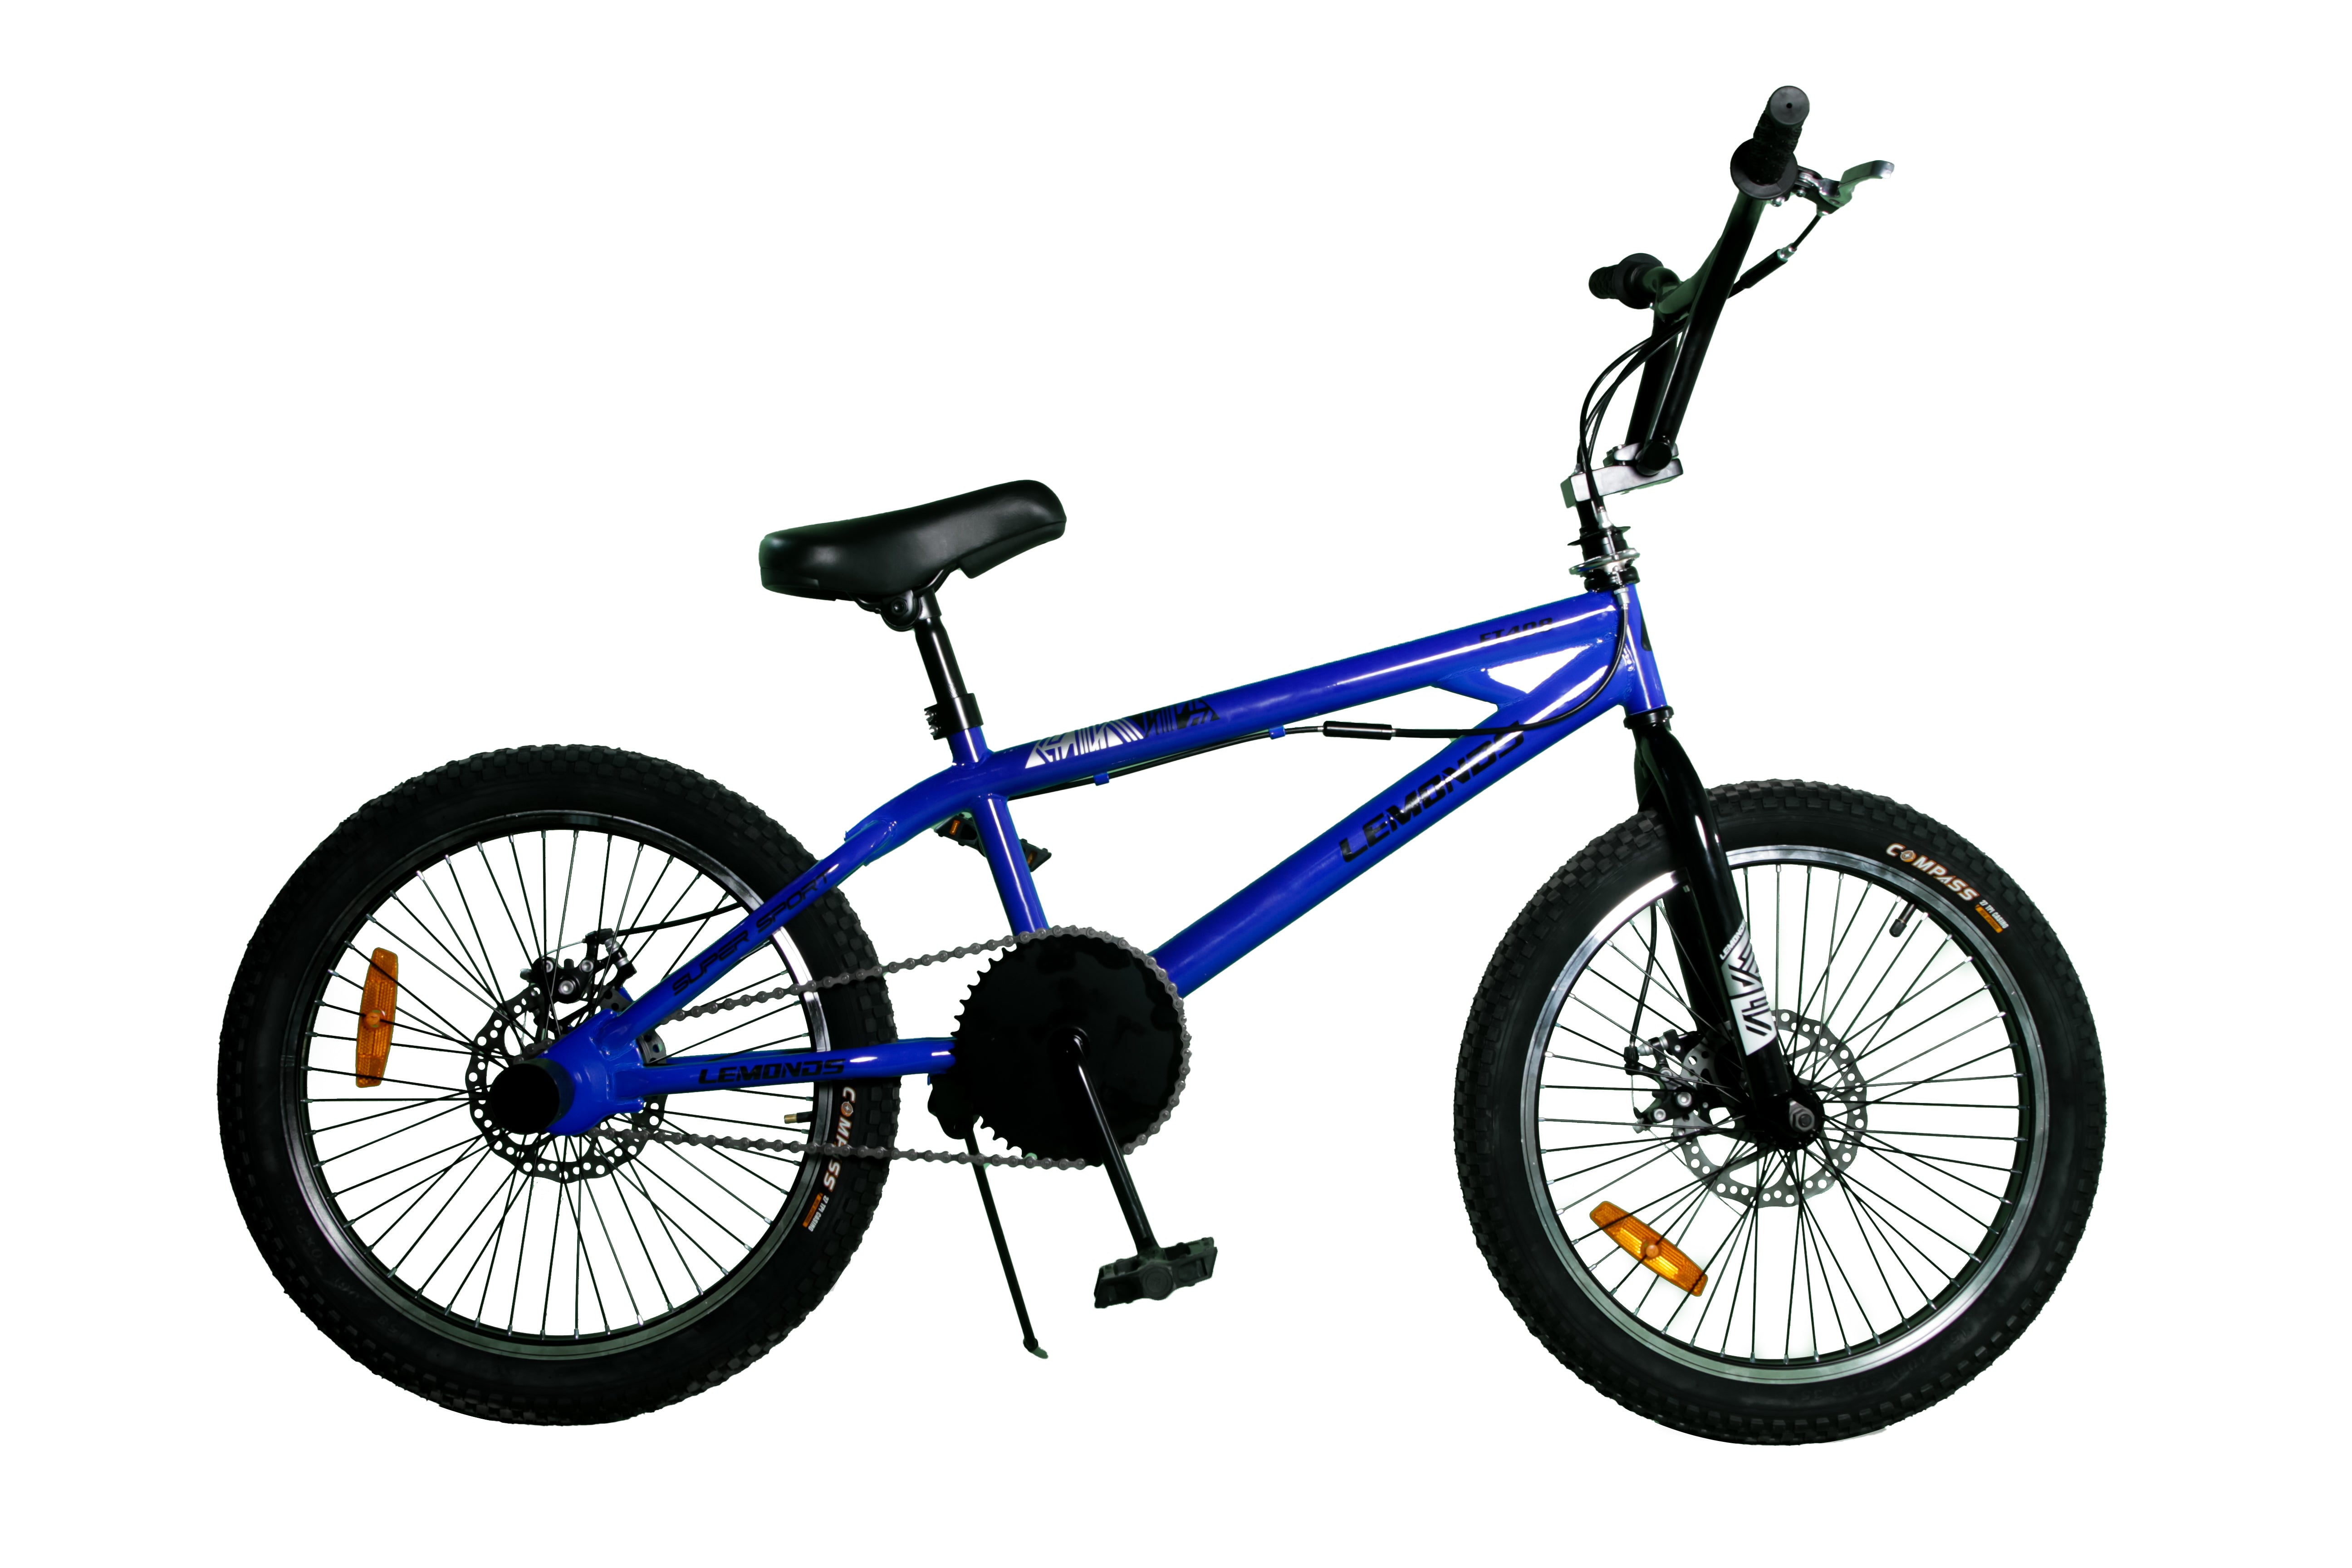 Bicicleta BMX 20 pulgadas | Bicicleta de salto estilo BMX para chicos